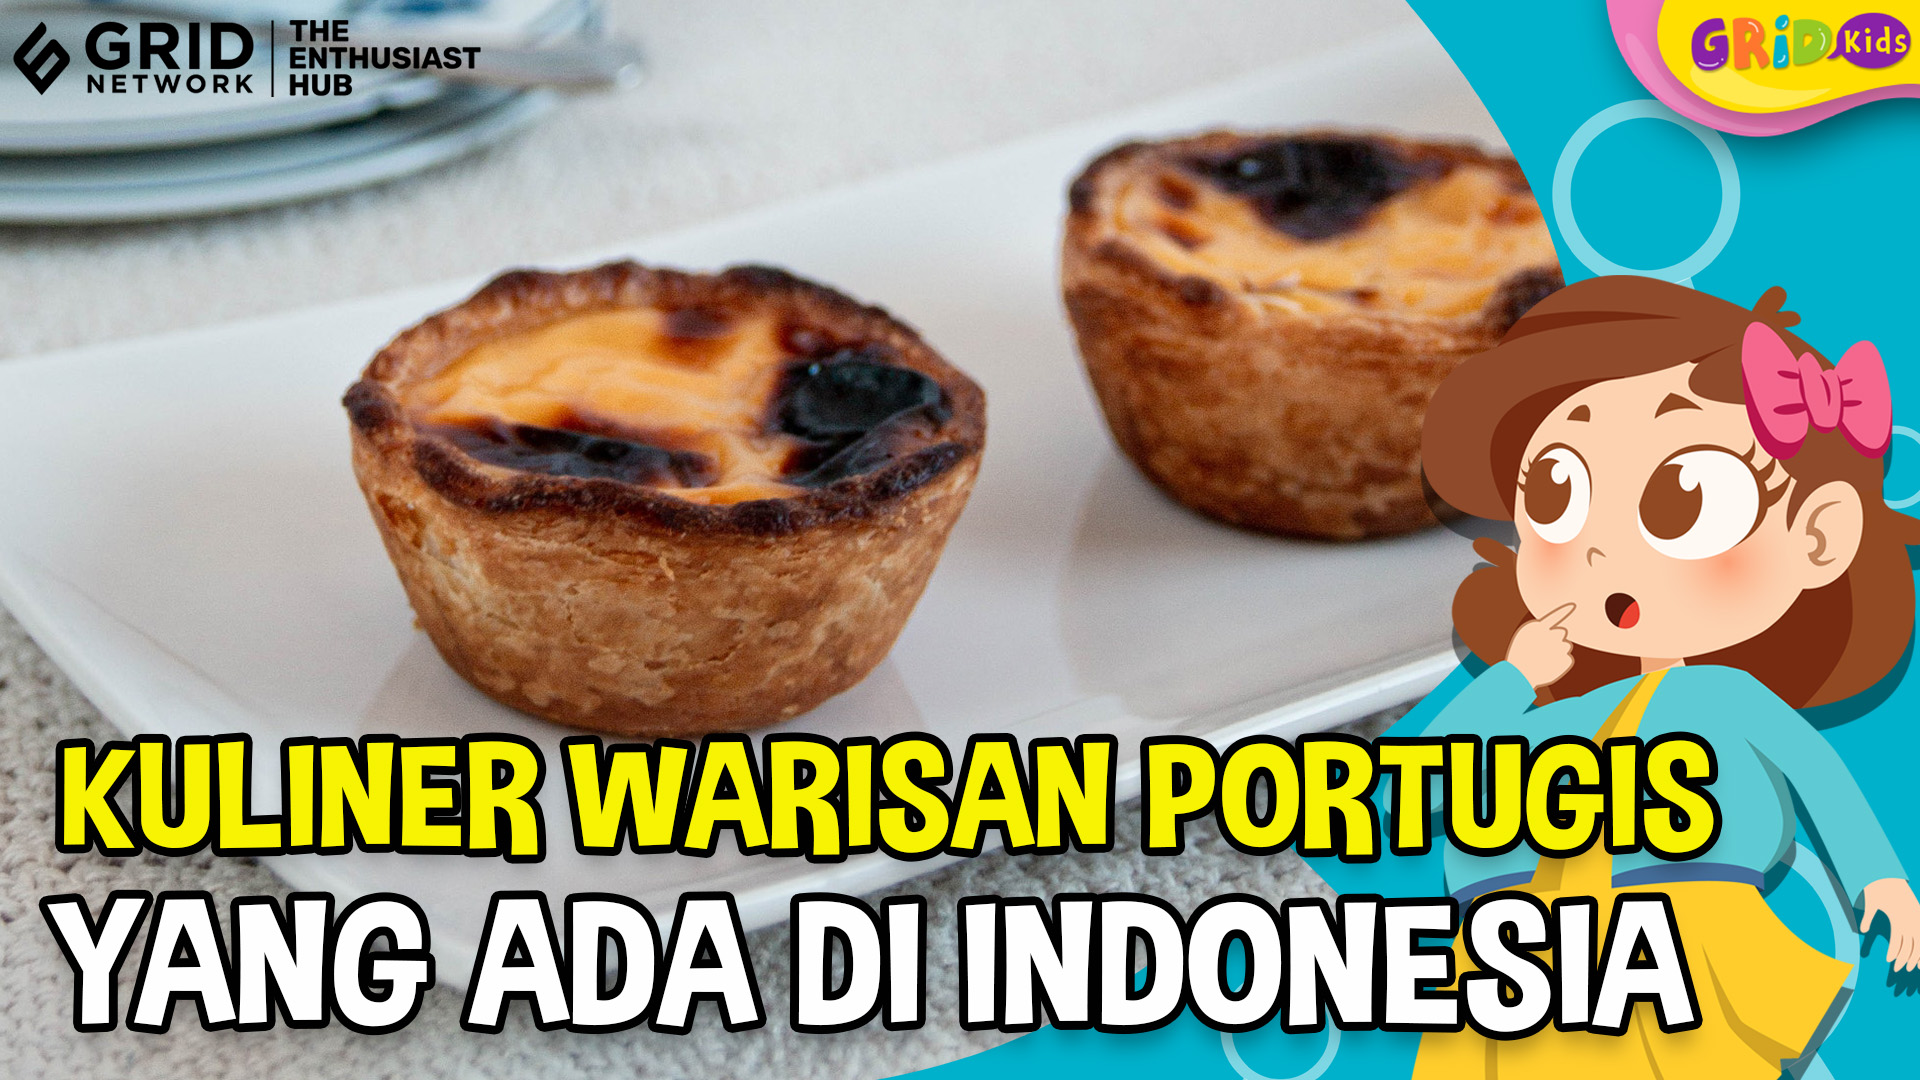 Top 5 Kuliner Warisan Portugis yang Masih Terkenal di Indonesia - Fakta Menarik